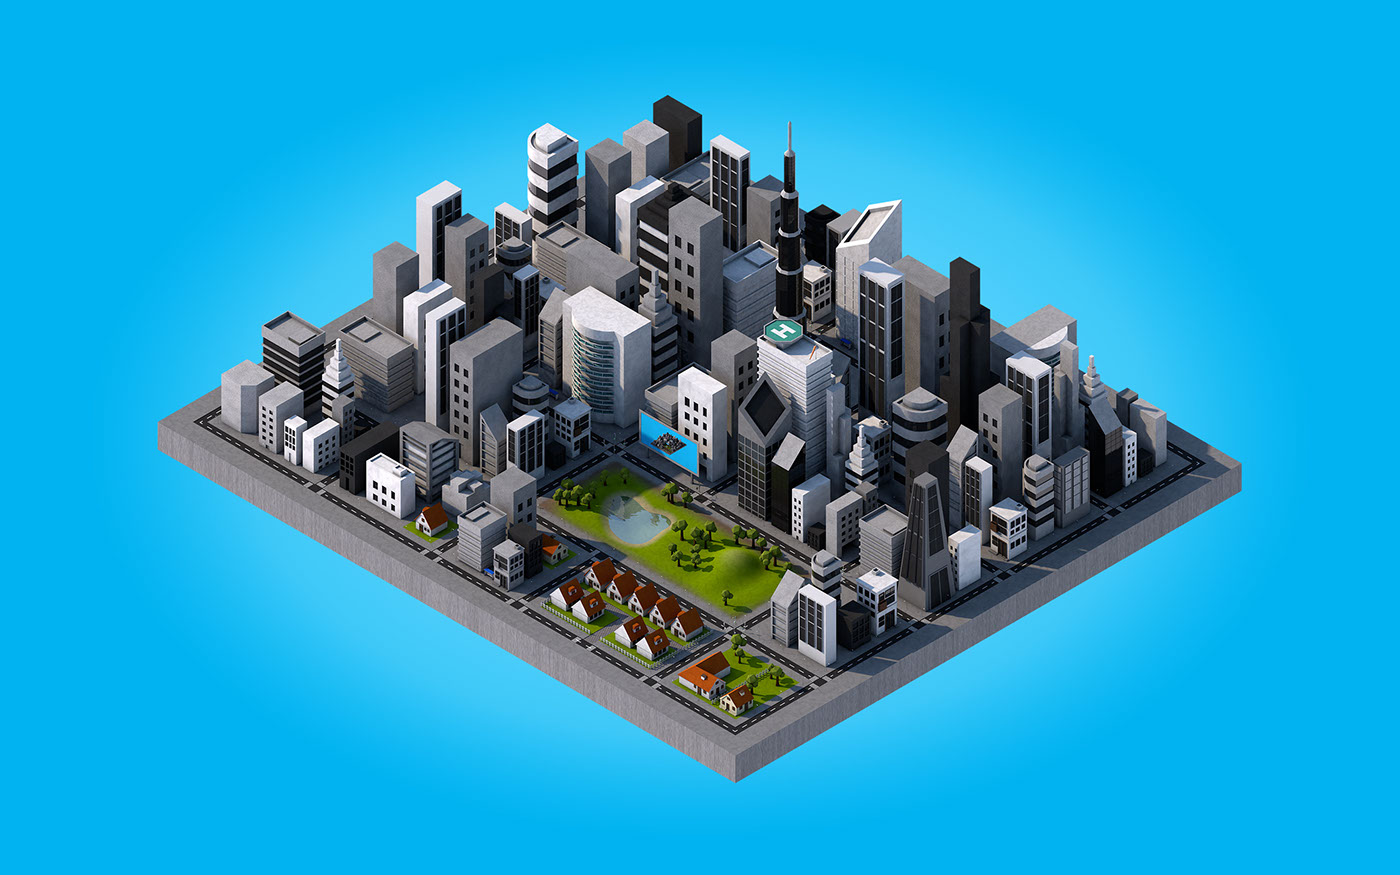 Imagem geral da cidade modelada em 3D em perspectiva isométrica. Contém predios, casas, um parque, entre outros elementos.